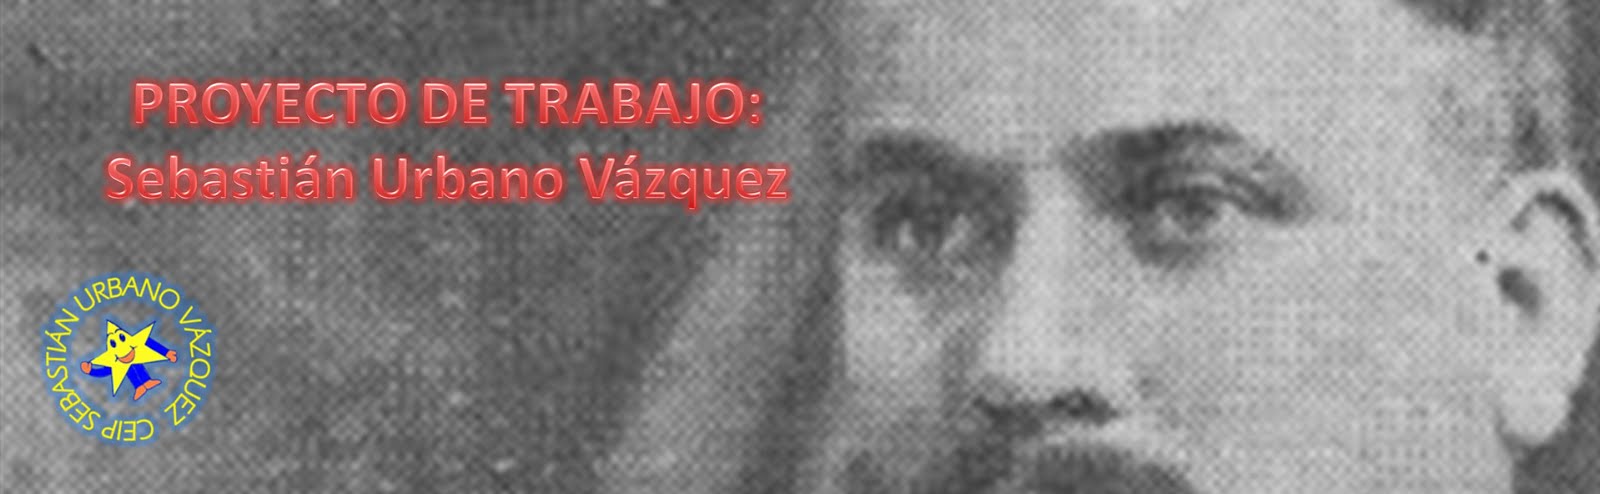 PROYECTO: Sebastián Urbano Vázquez